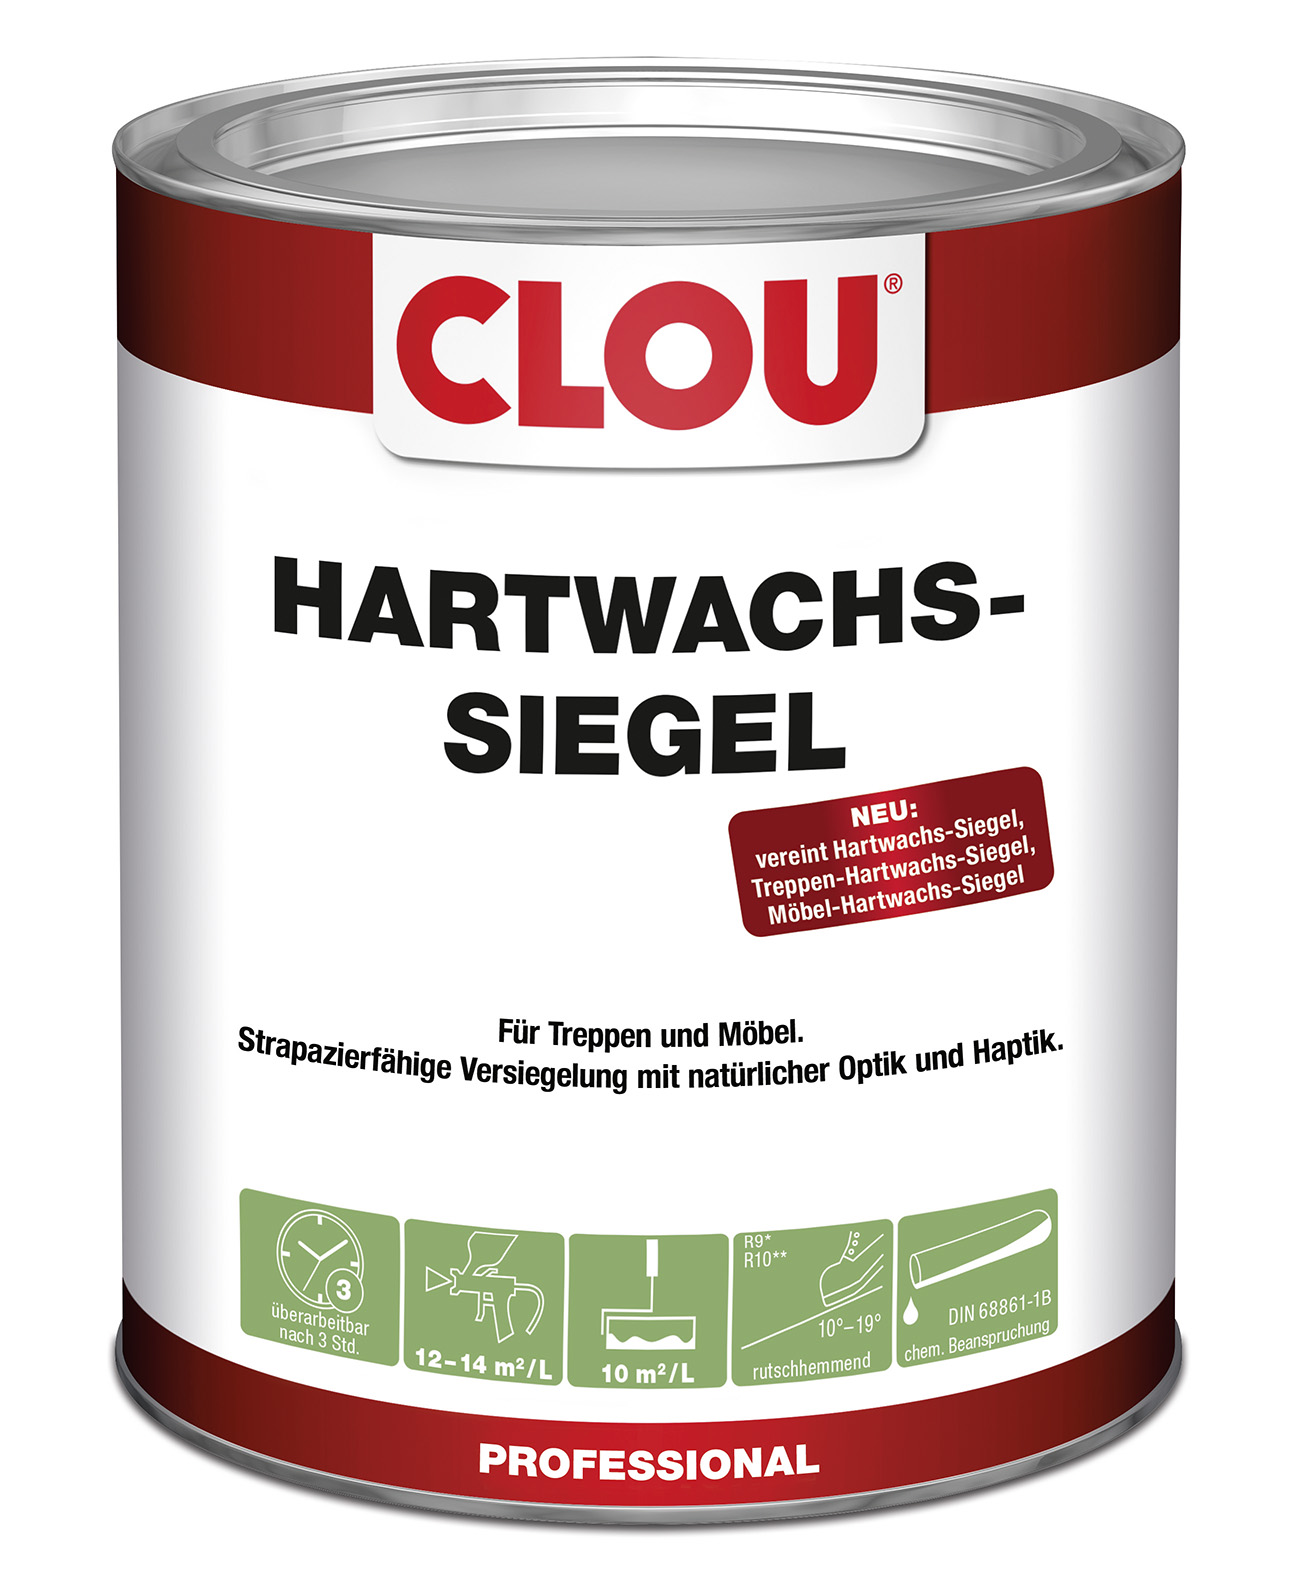 Hartwachs-Siegel